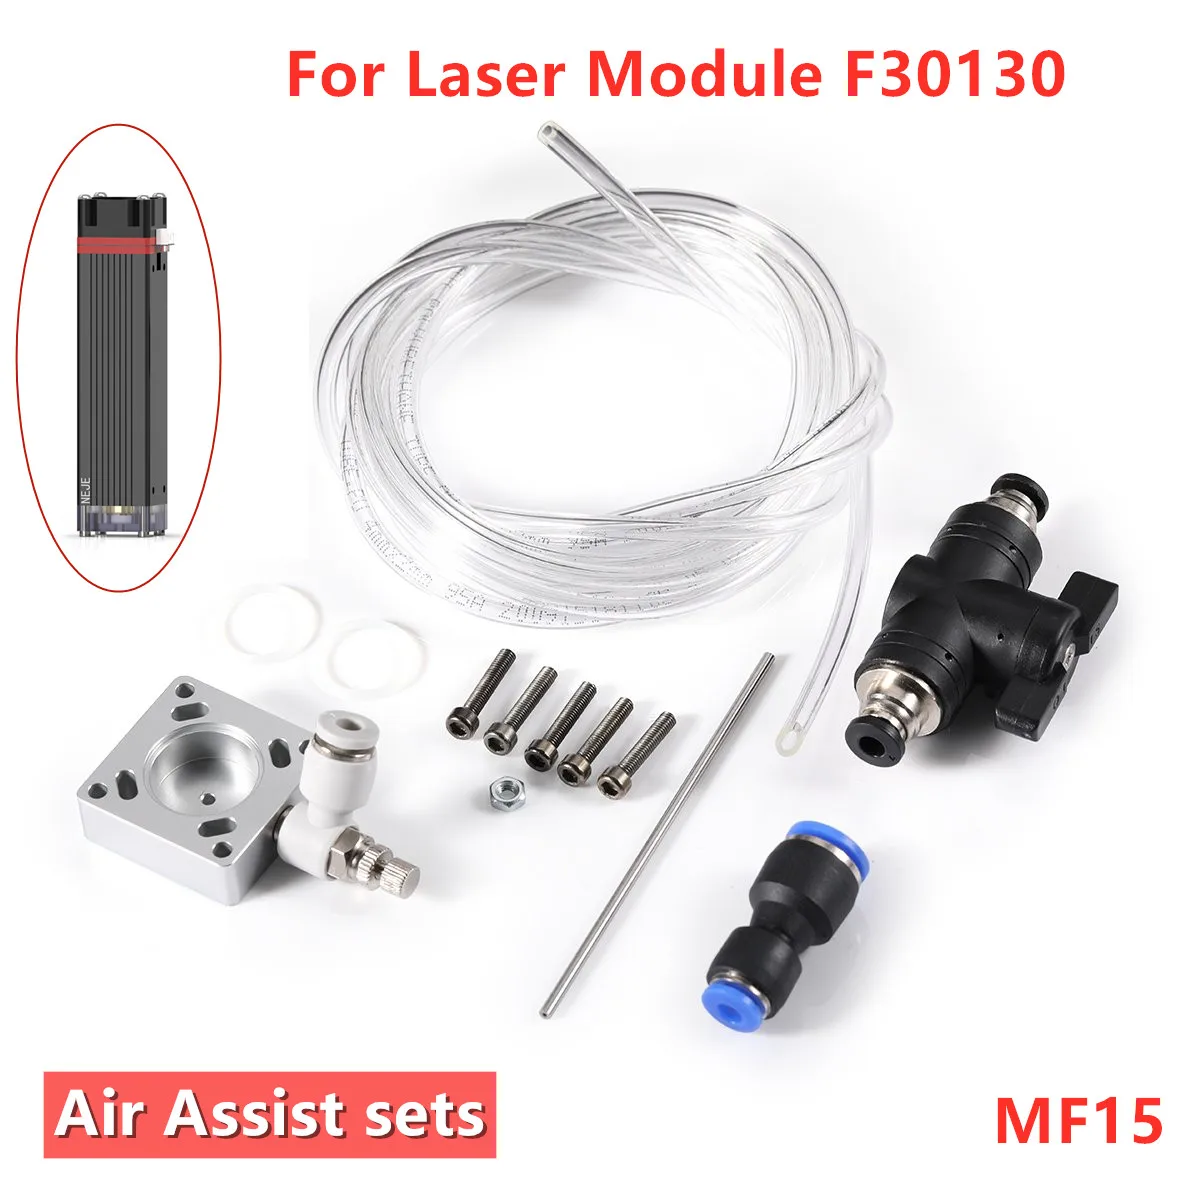 NEJE MF8 /MF11 /MF15 ручное управление, воздушный вспомогательный комплект для лазерных модулей NEJE